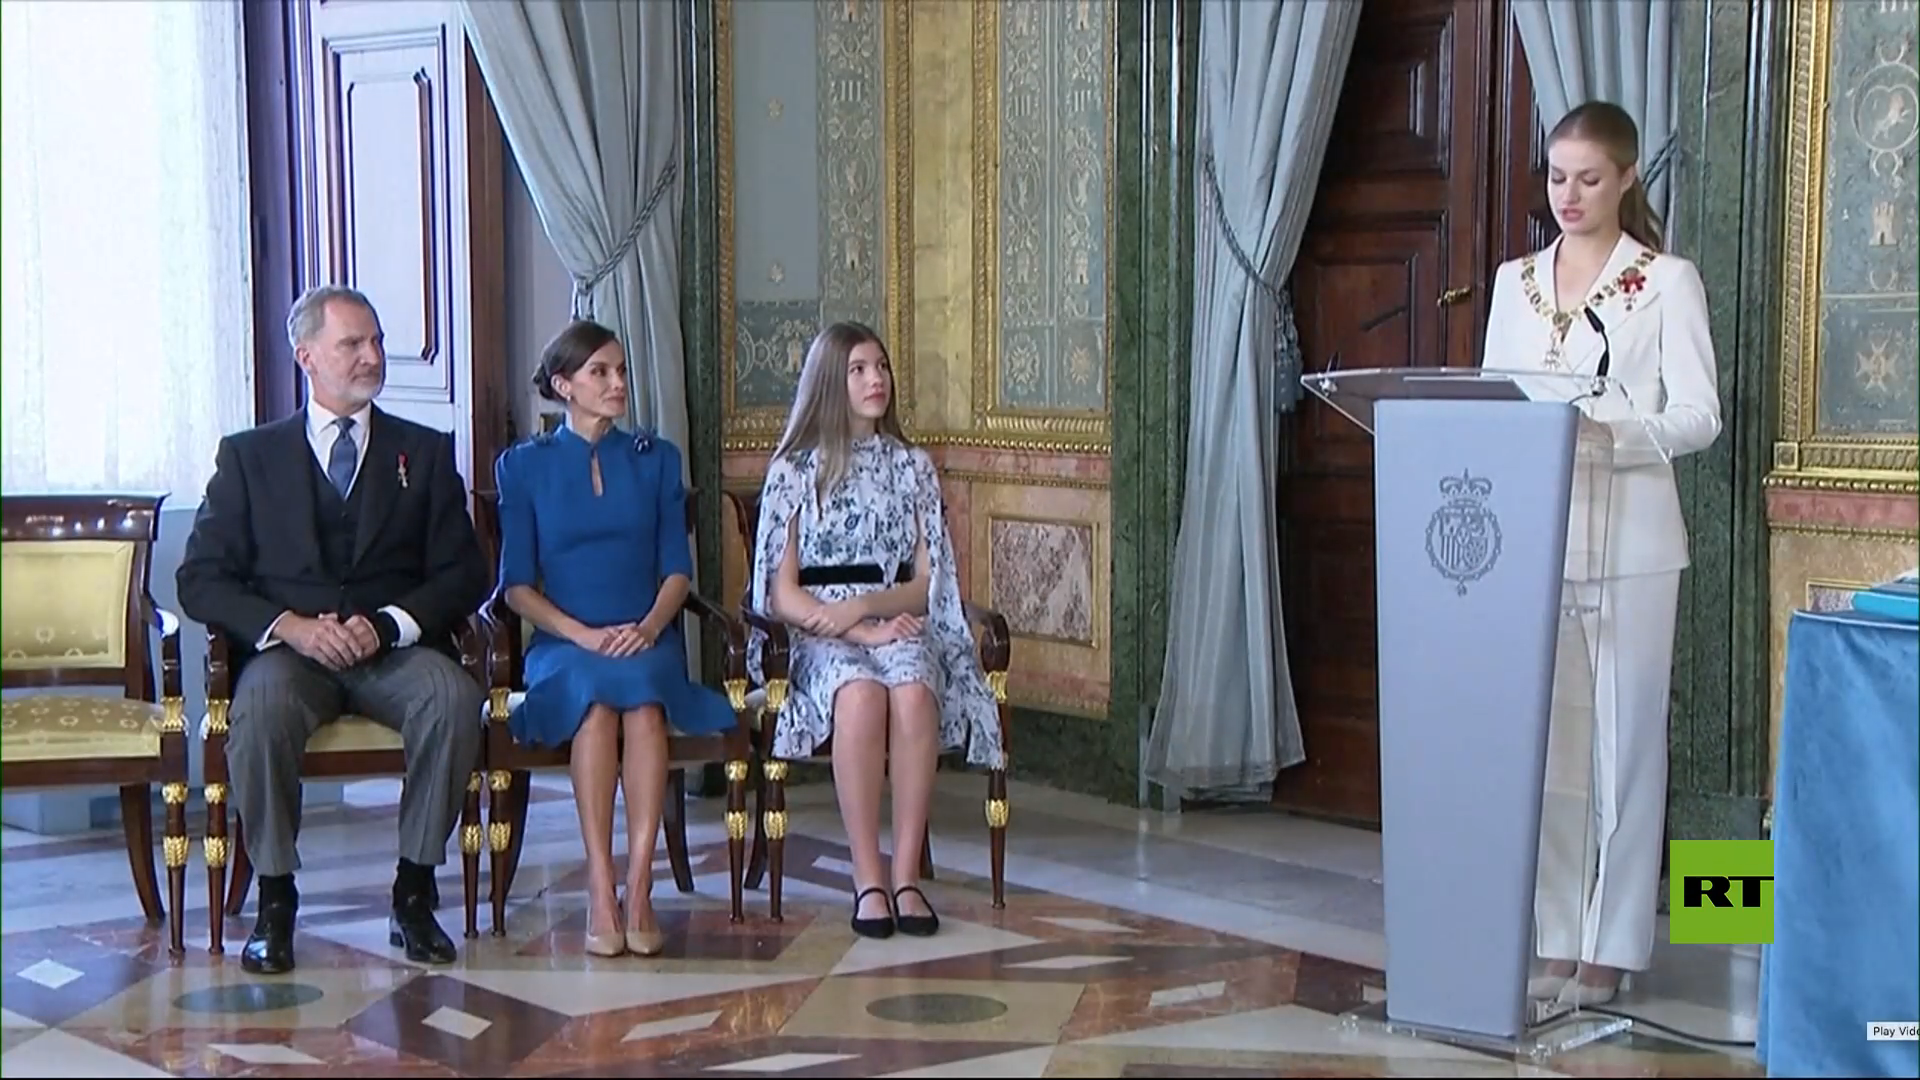 شاهد بالفيديو.. الأميرة ليونور تؤدي اليمين أمام البرلمان الإسباني كوريثة لعرش إسبانيا